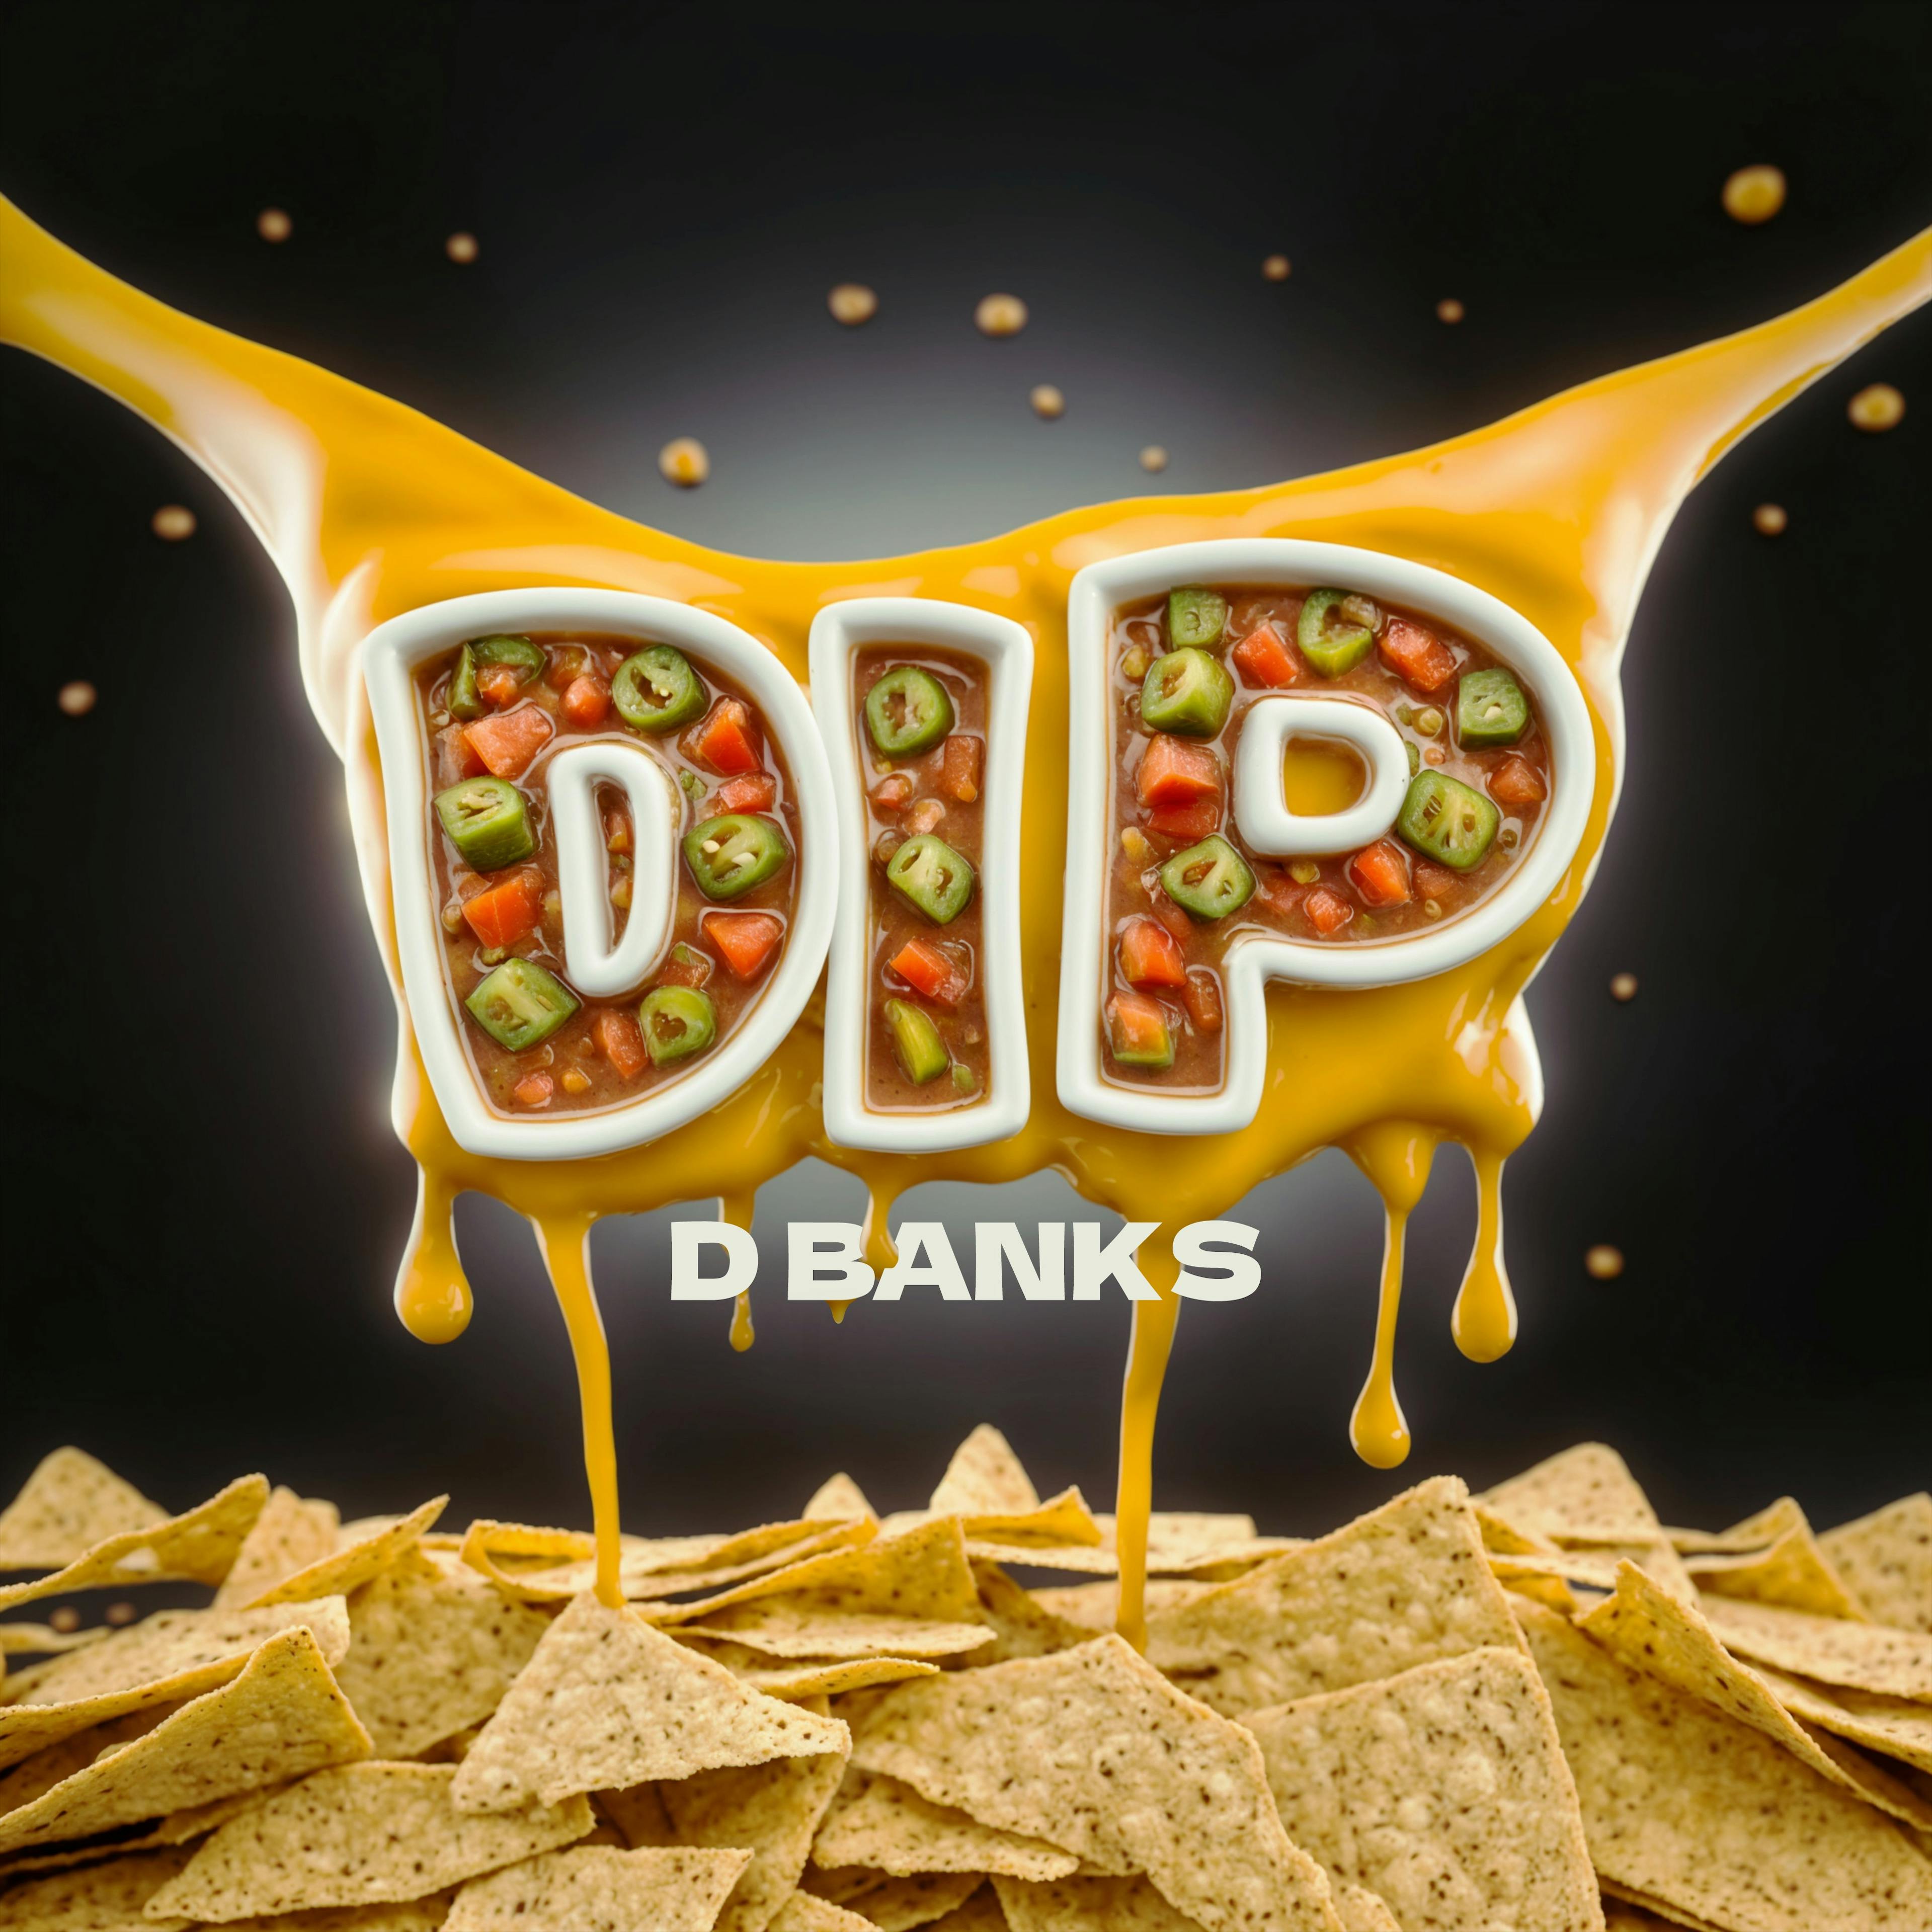 D BANKS - Dip